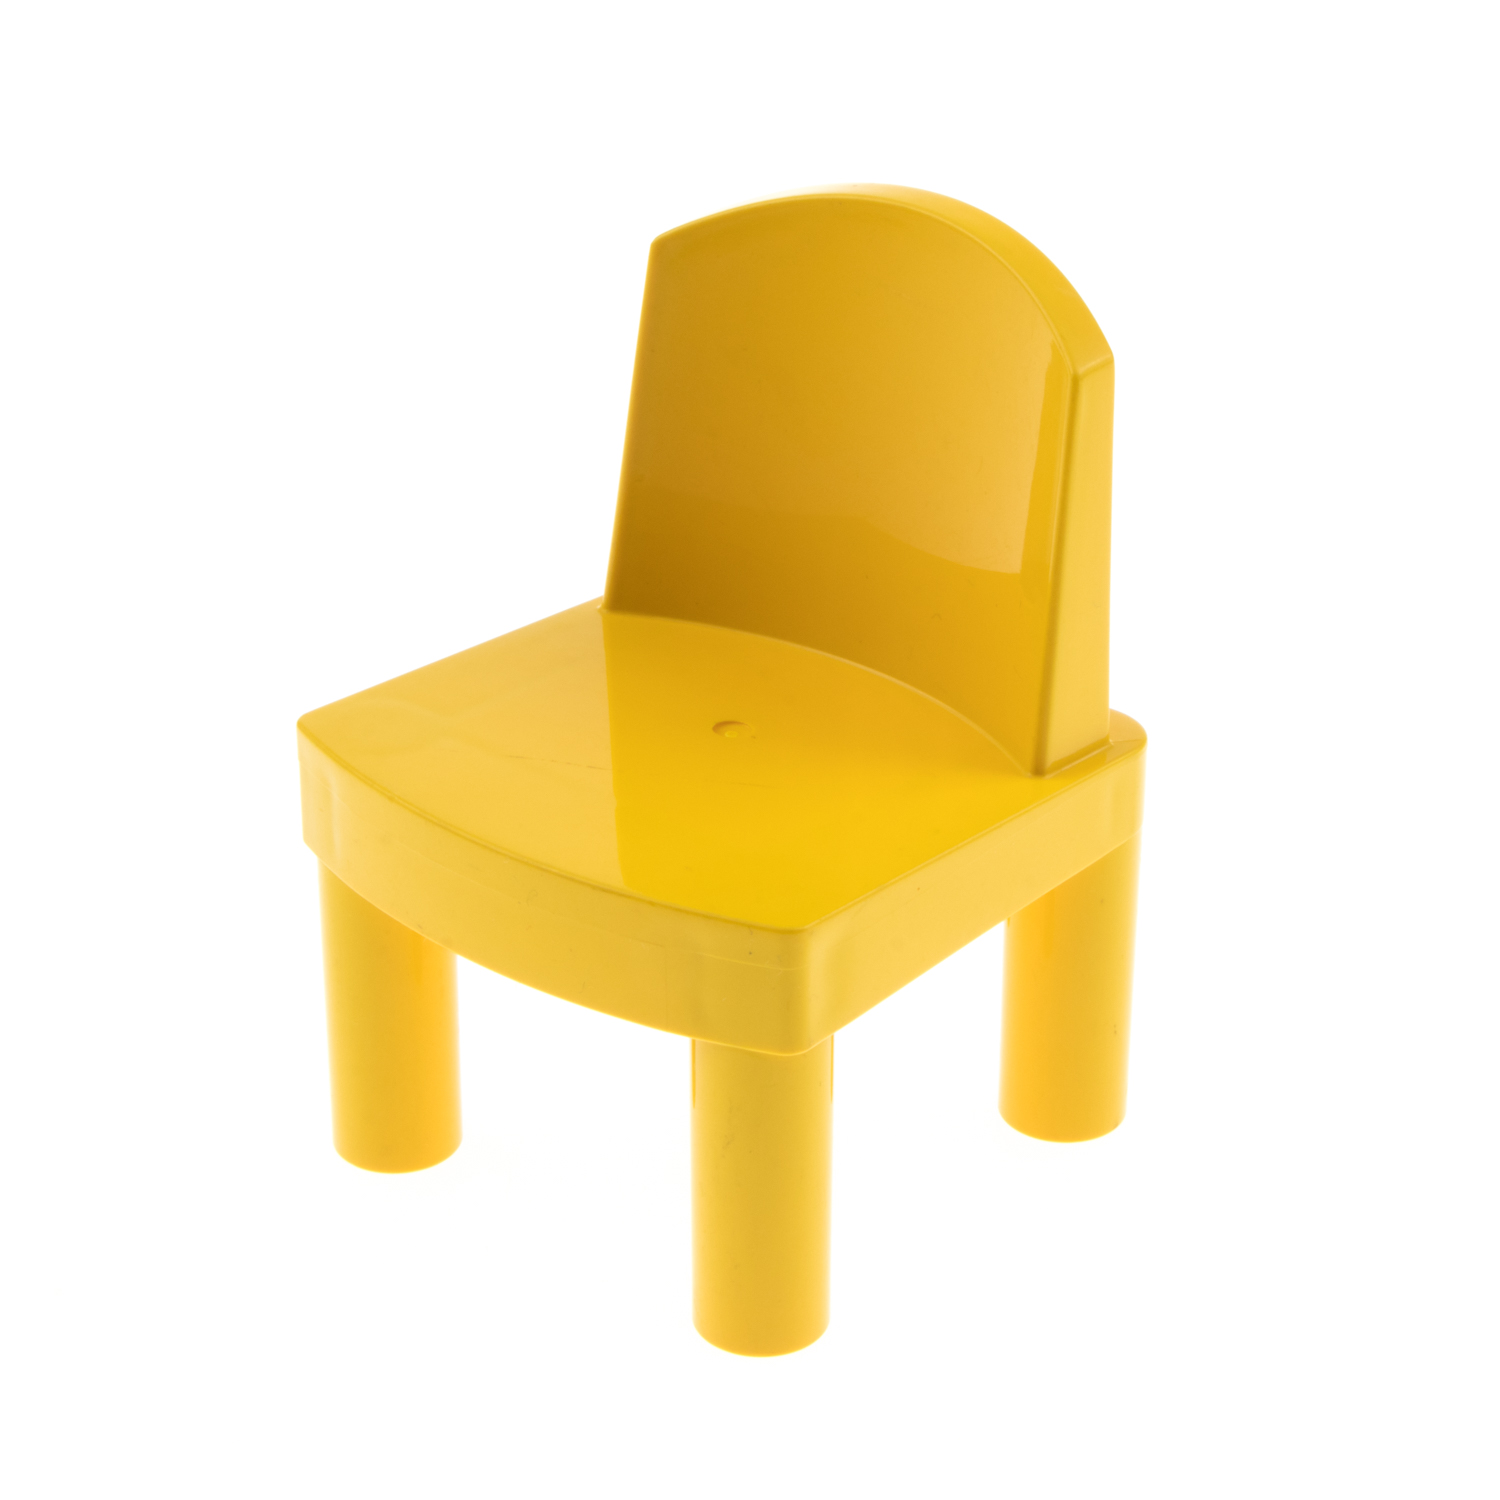 1x Lego Duplo Möbel Stuhl gelb groß für Puppe Puppenhaus 2954 31313